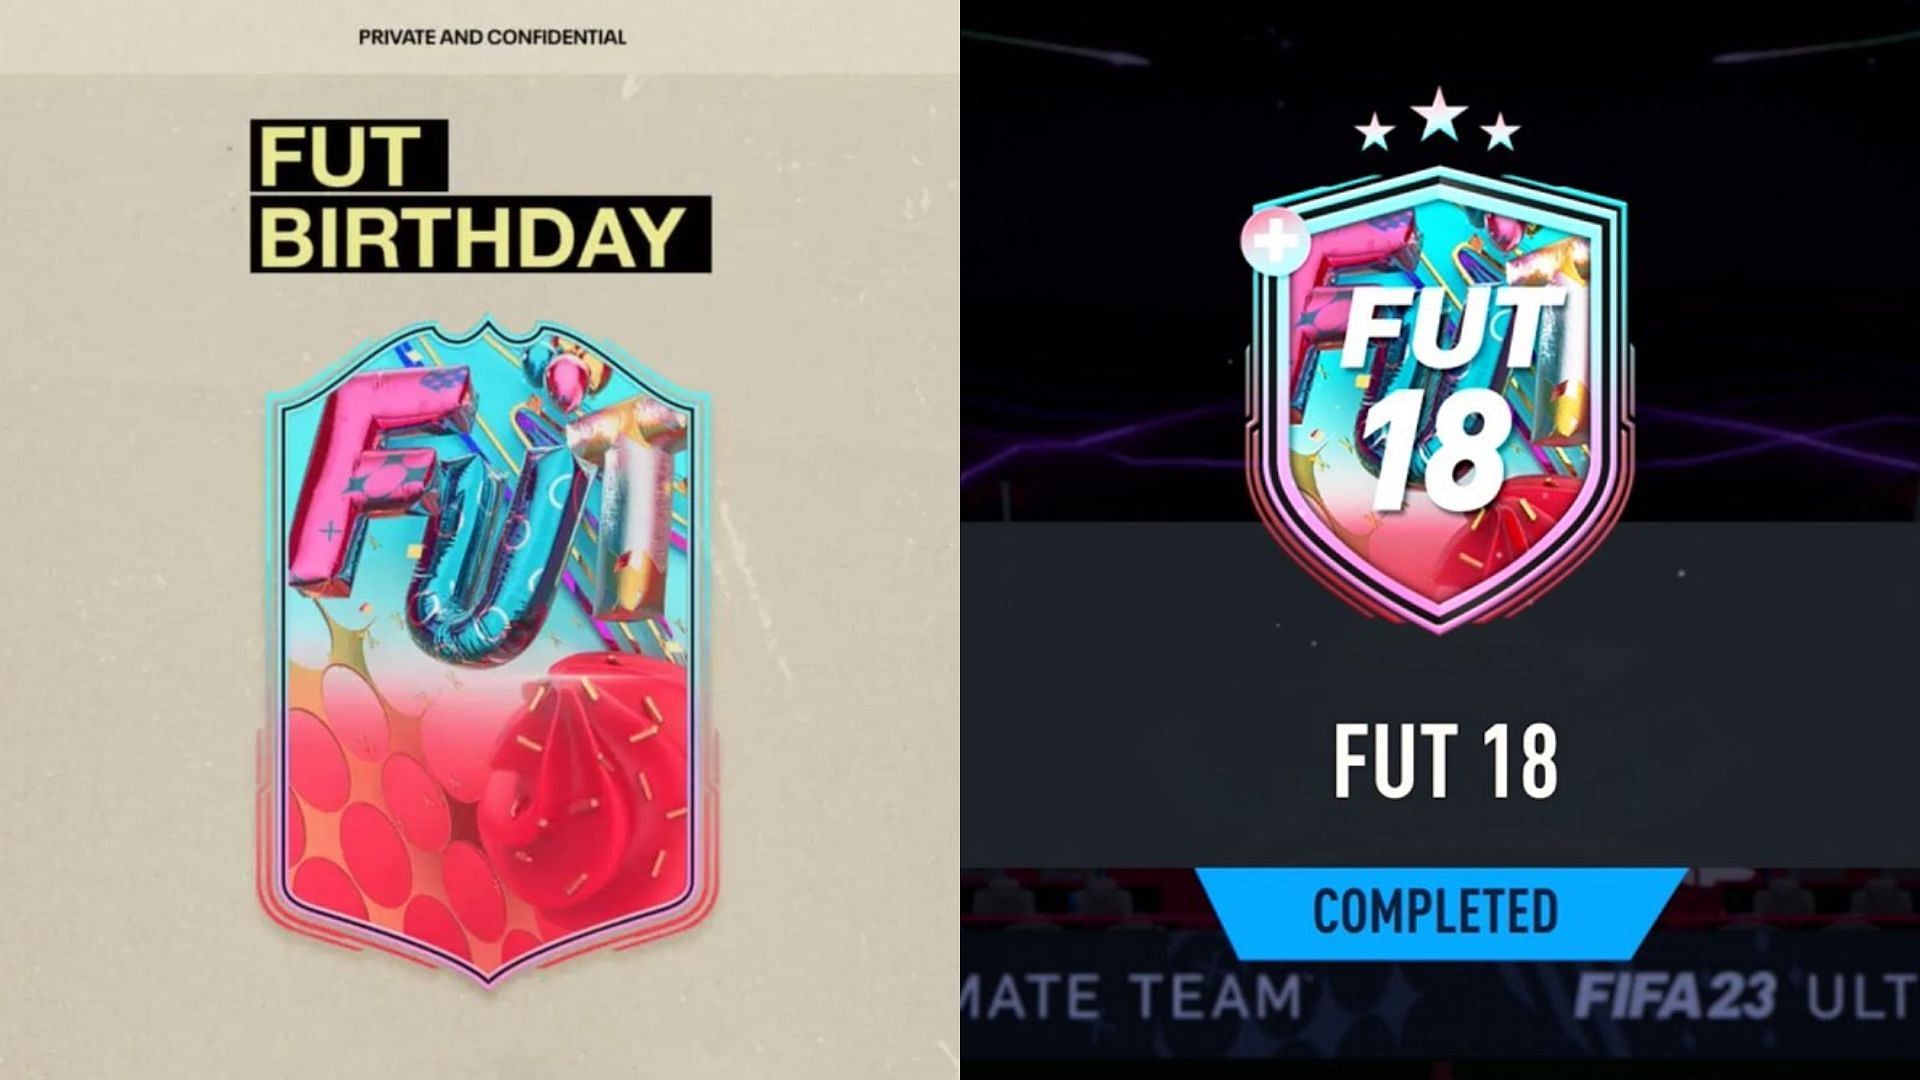 FUT 18 SBC Guide for FIFA 23 Ultimate Team (Image via EA Sports)